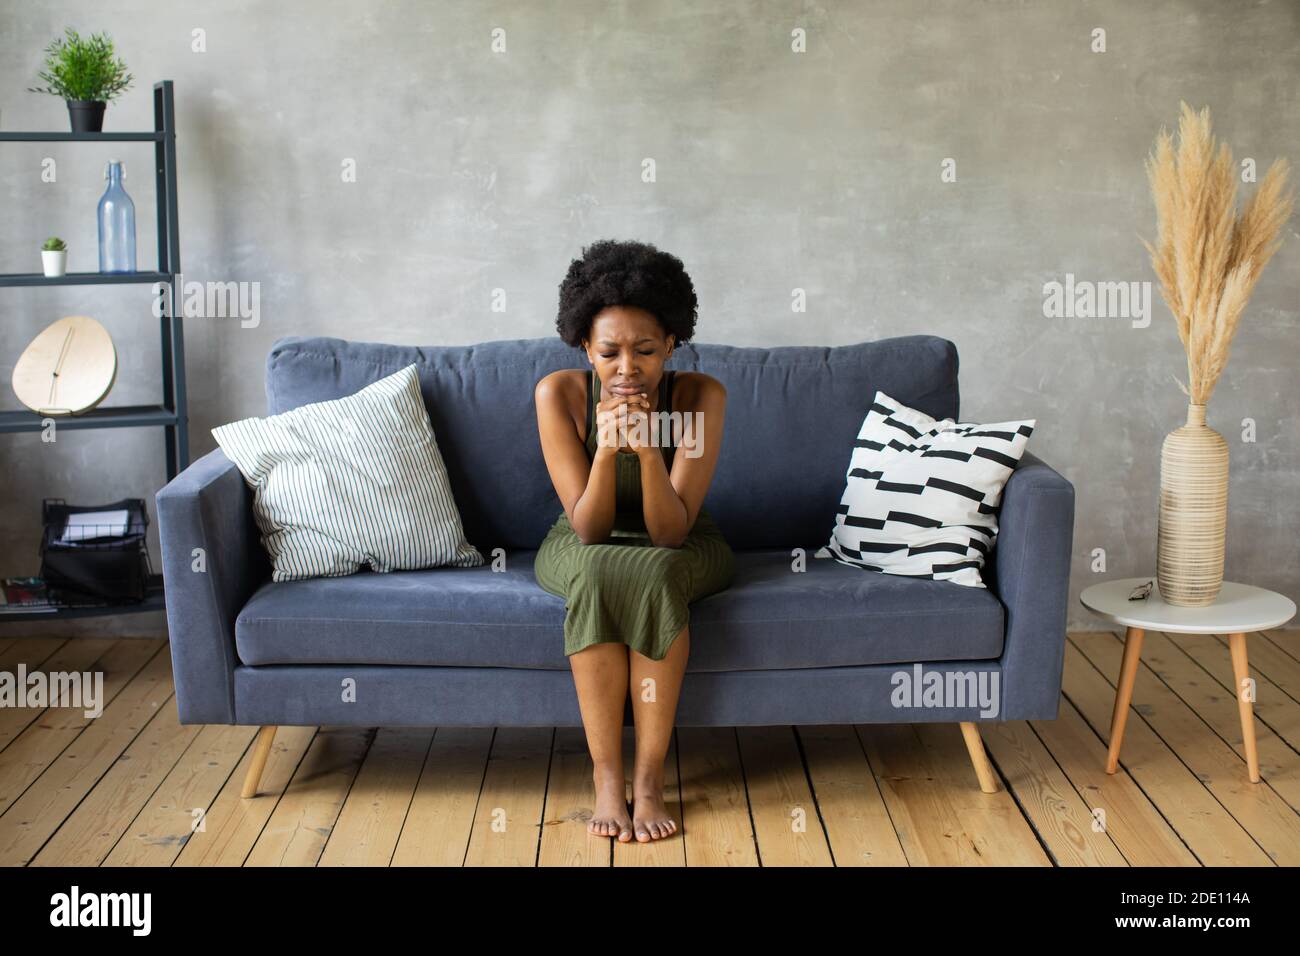 Infelice donna afroamericana siediti sul divano, la ragazza è molto turbata seduta sul divano del suo appartamento. Foto Stock